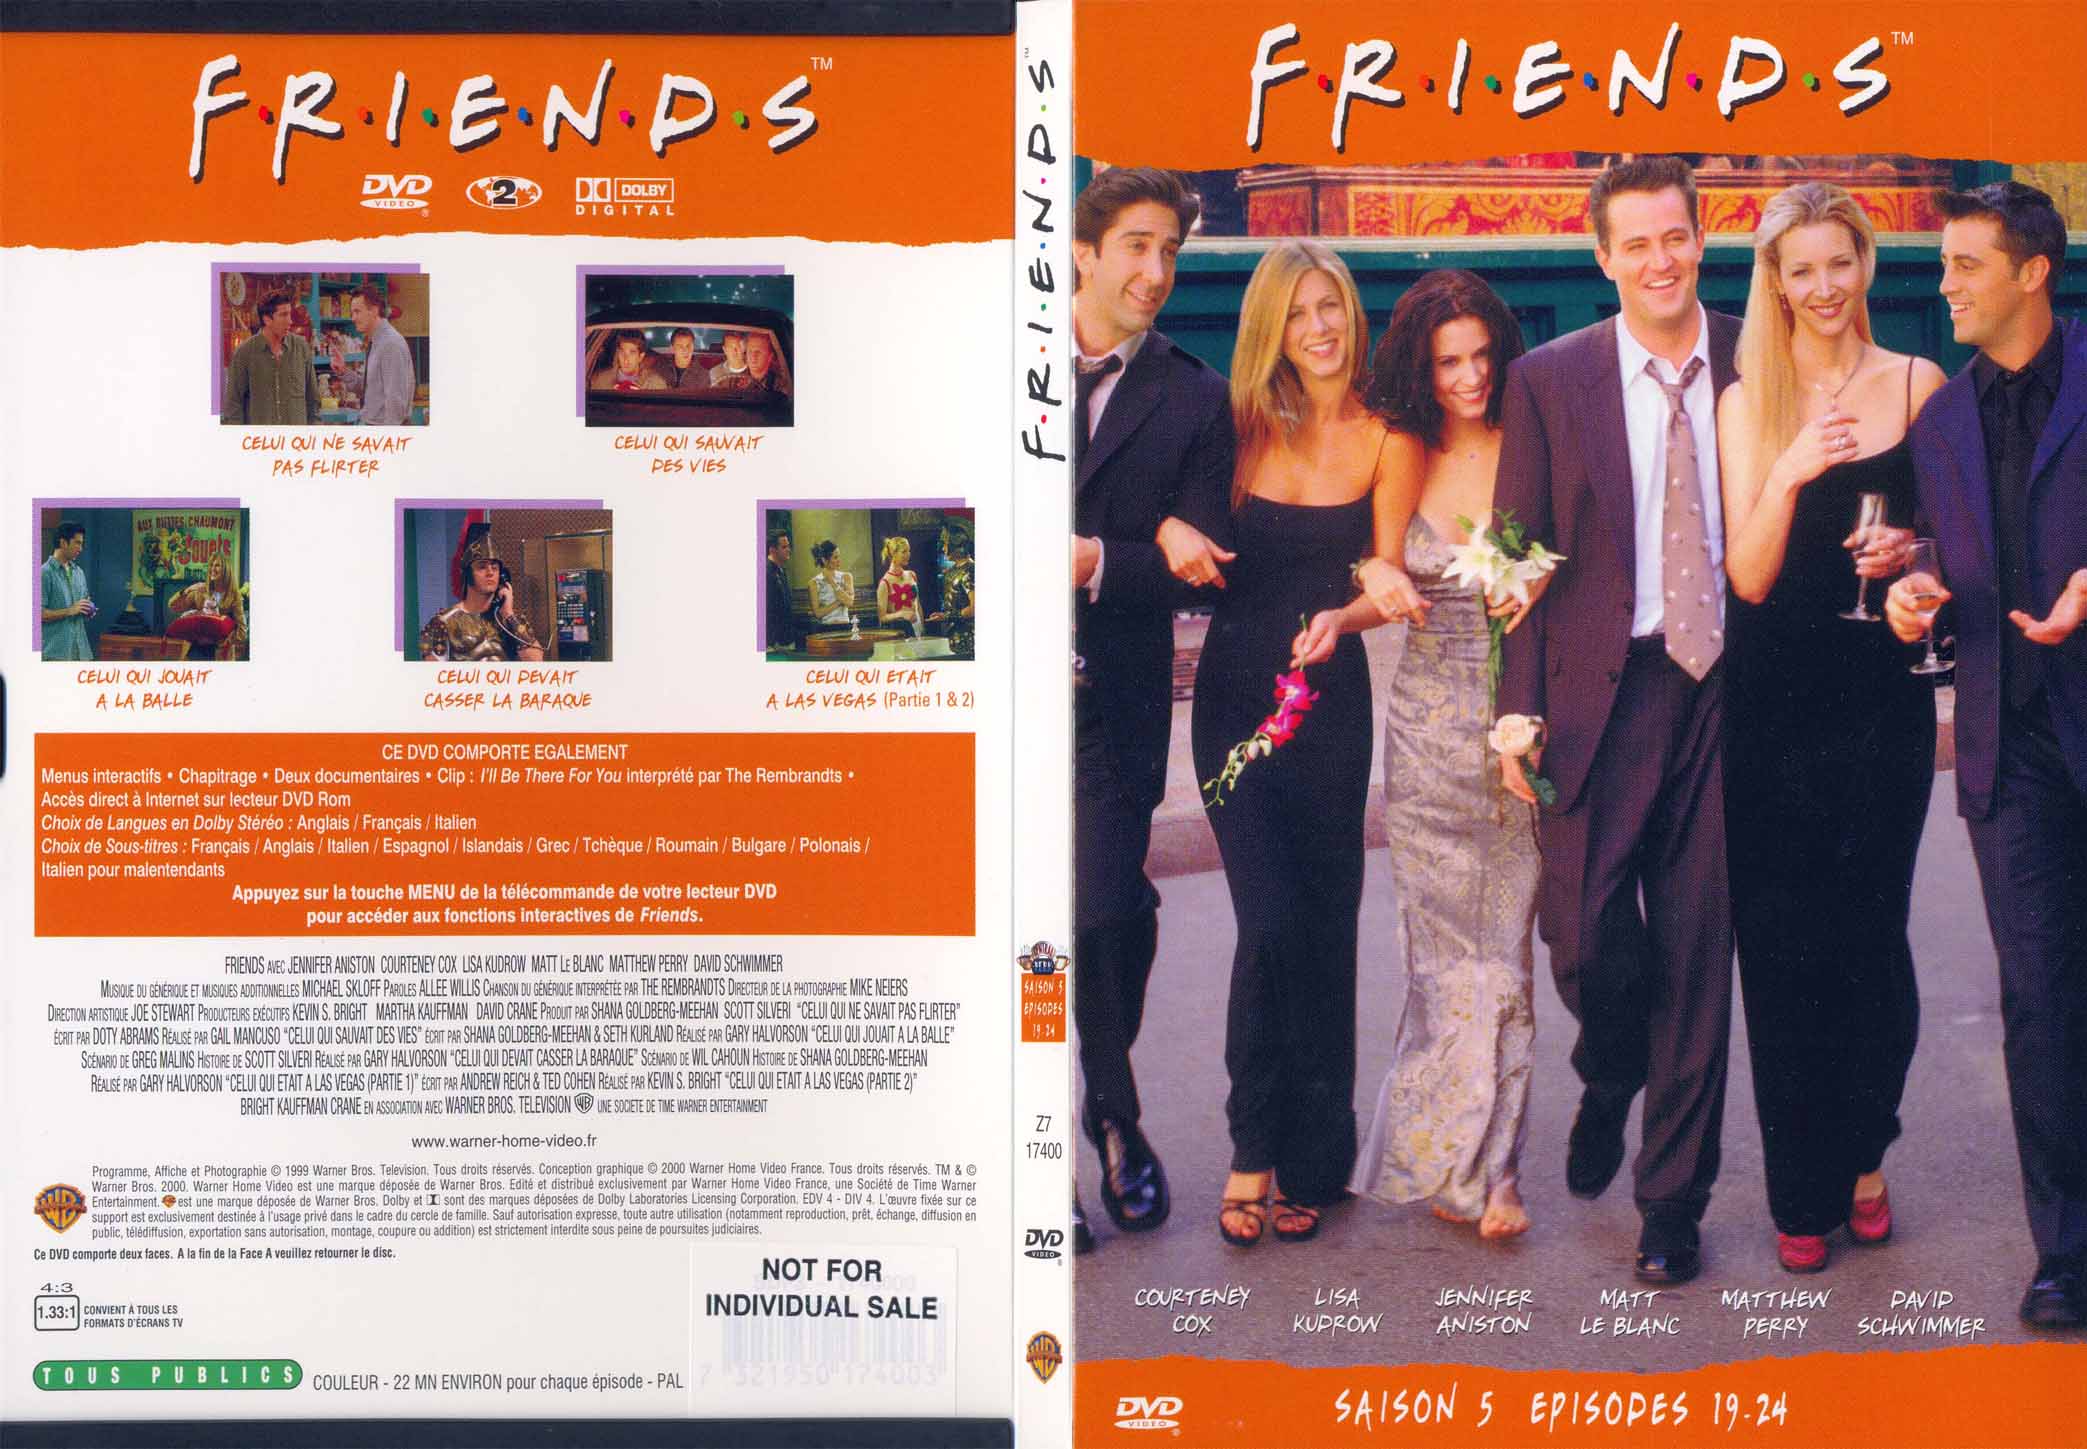 Jaquette DVD Friends saison 5 dvd 4 - SLIM